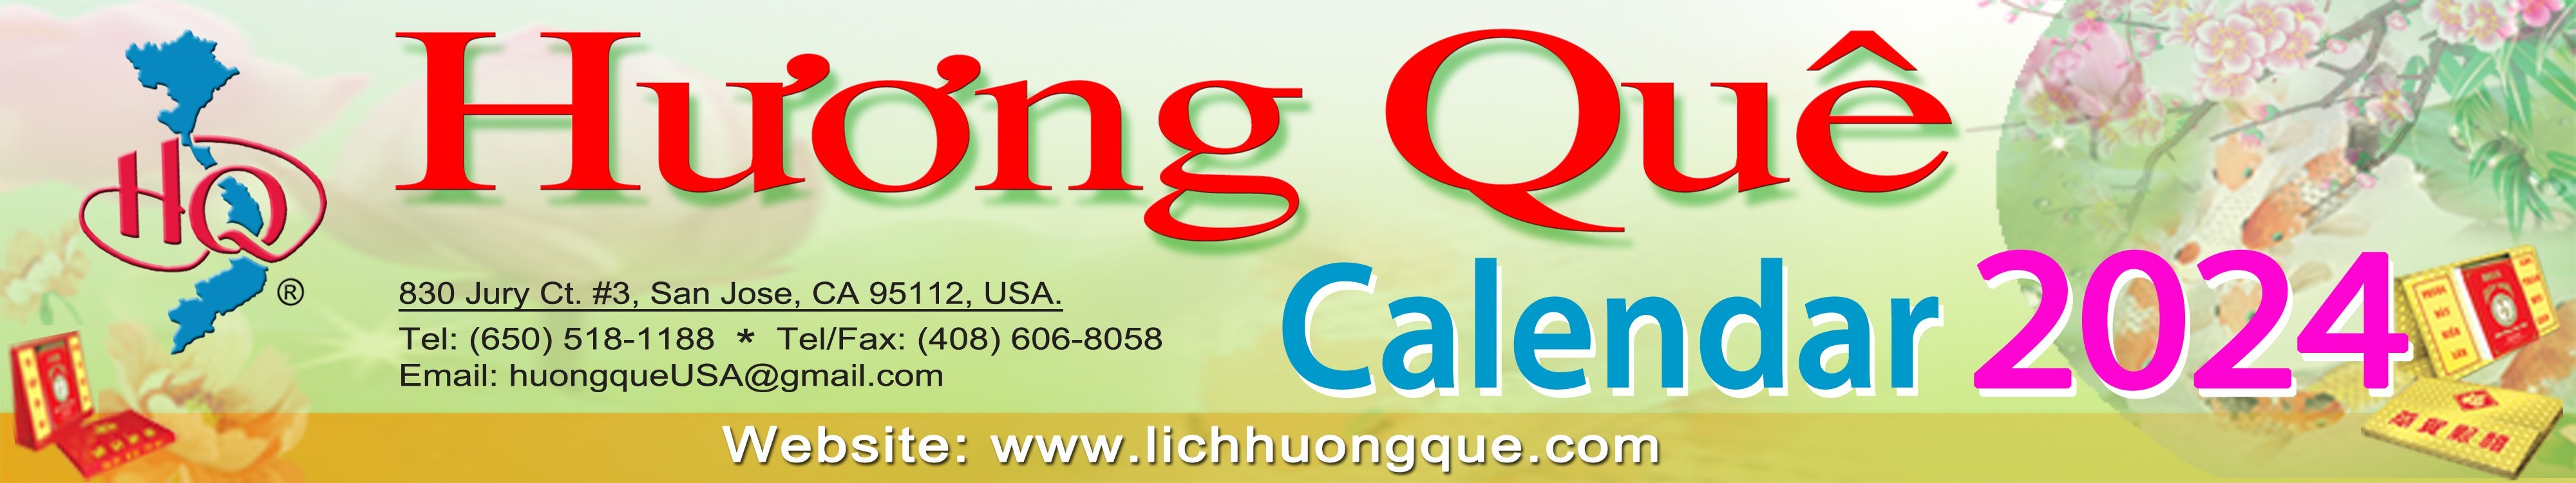 Huong Que Calendar